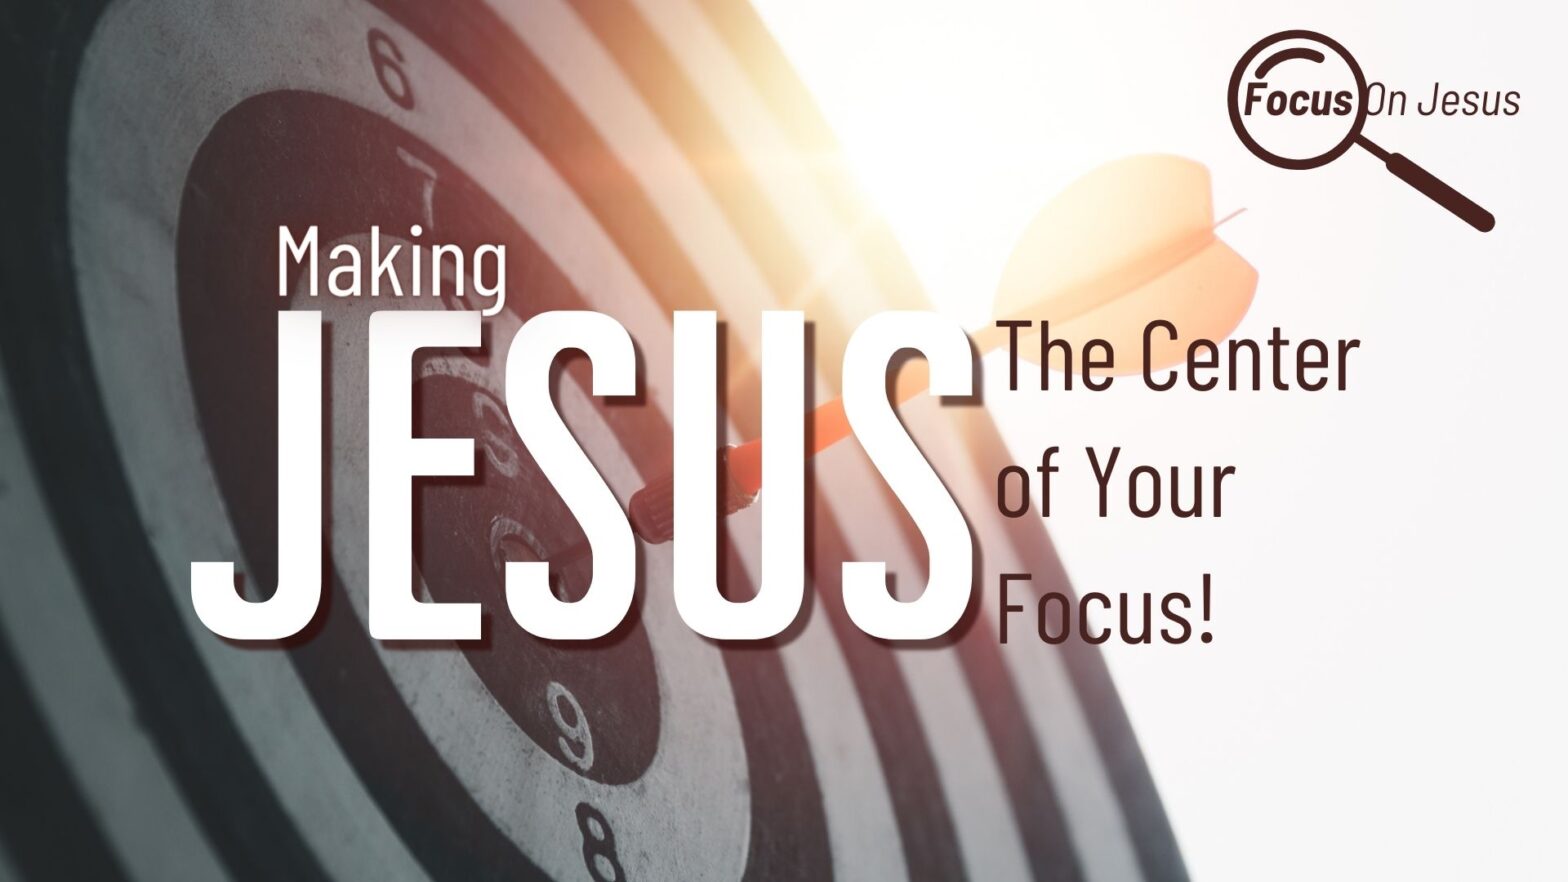 Focus On Jesus